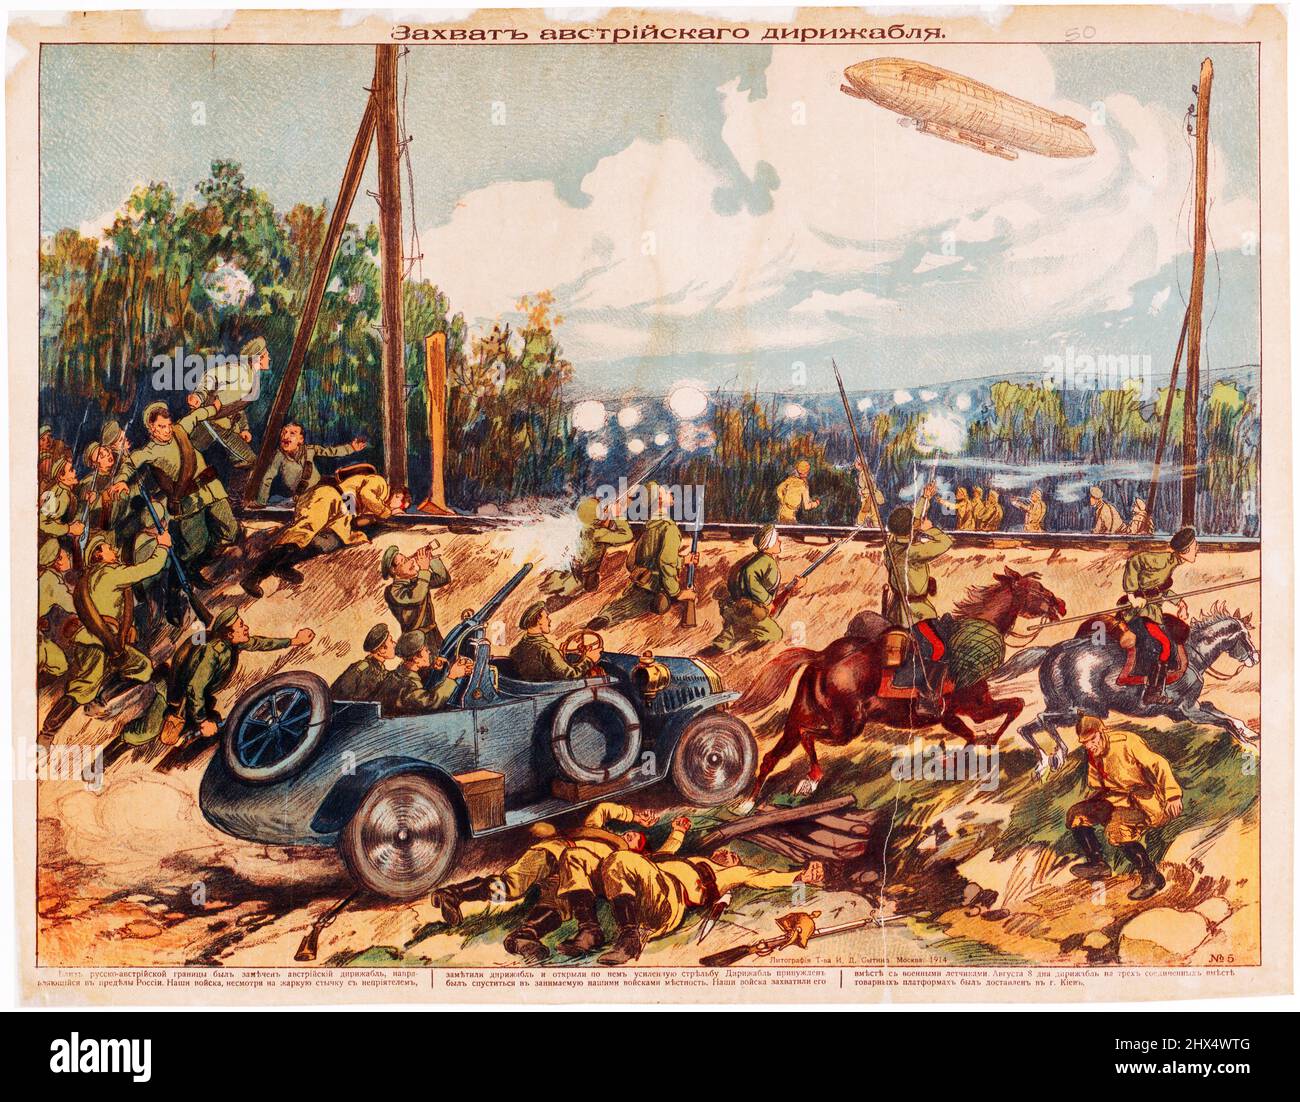 Die Eroberung eines österreichischen Luftschiffes (Zeppelin). I. D. Sytin Partnership Lithography, 1914. Lubok, erster Weltkrieg Stockfoto